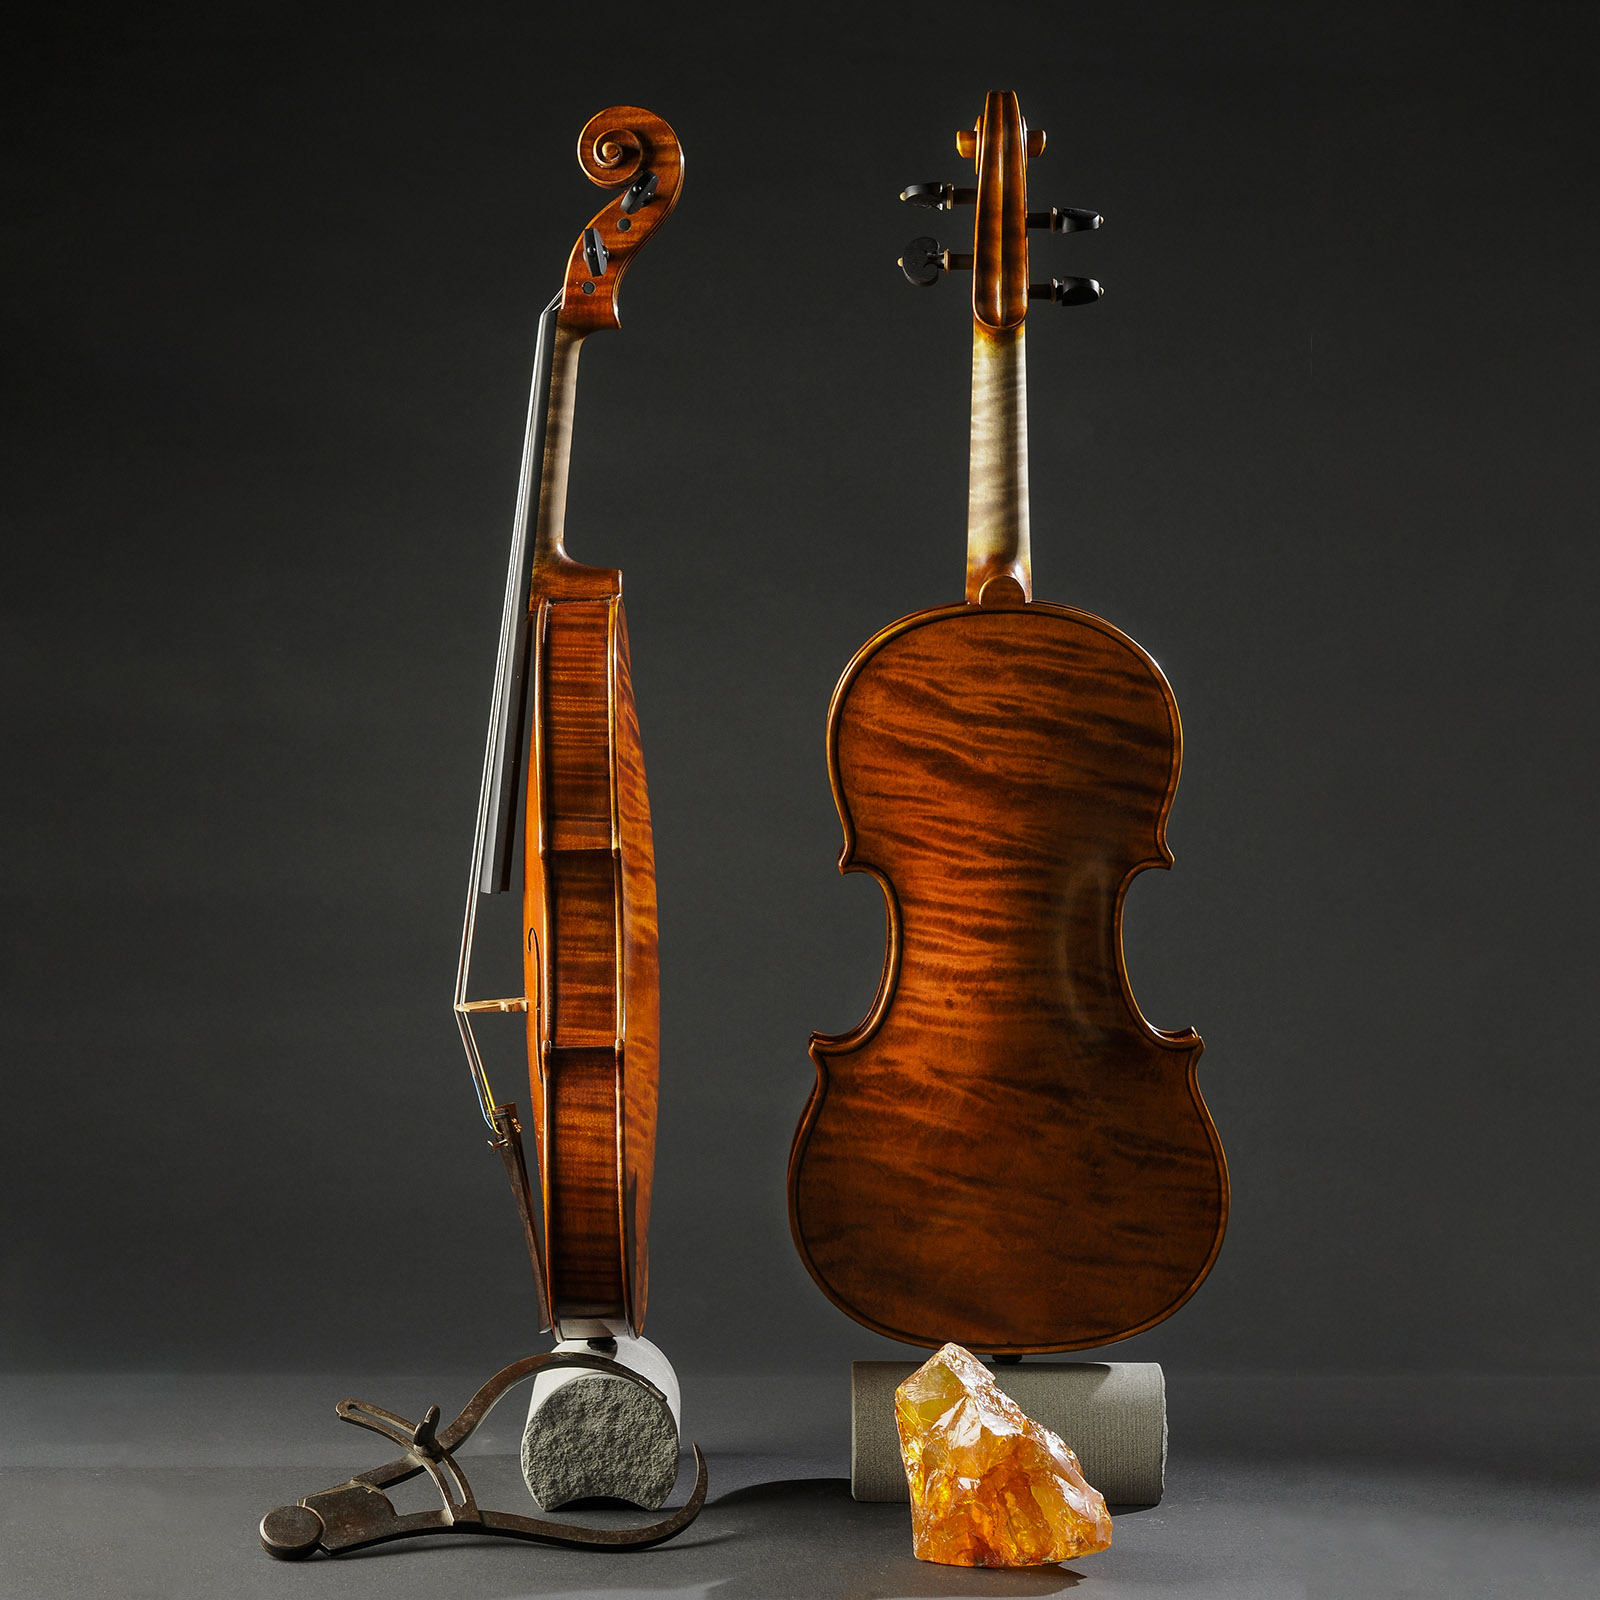 Stradivari & Del Gesù Stradivari & Mod. Del Gesù “The Twins“ - Image 10